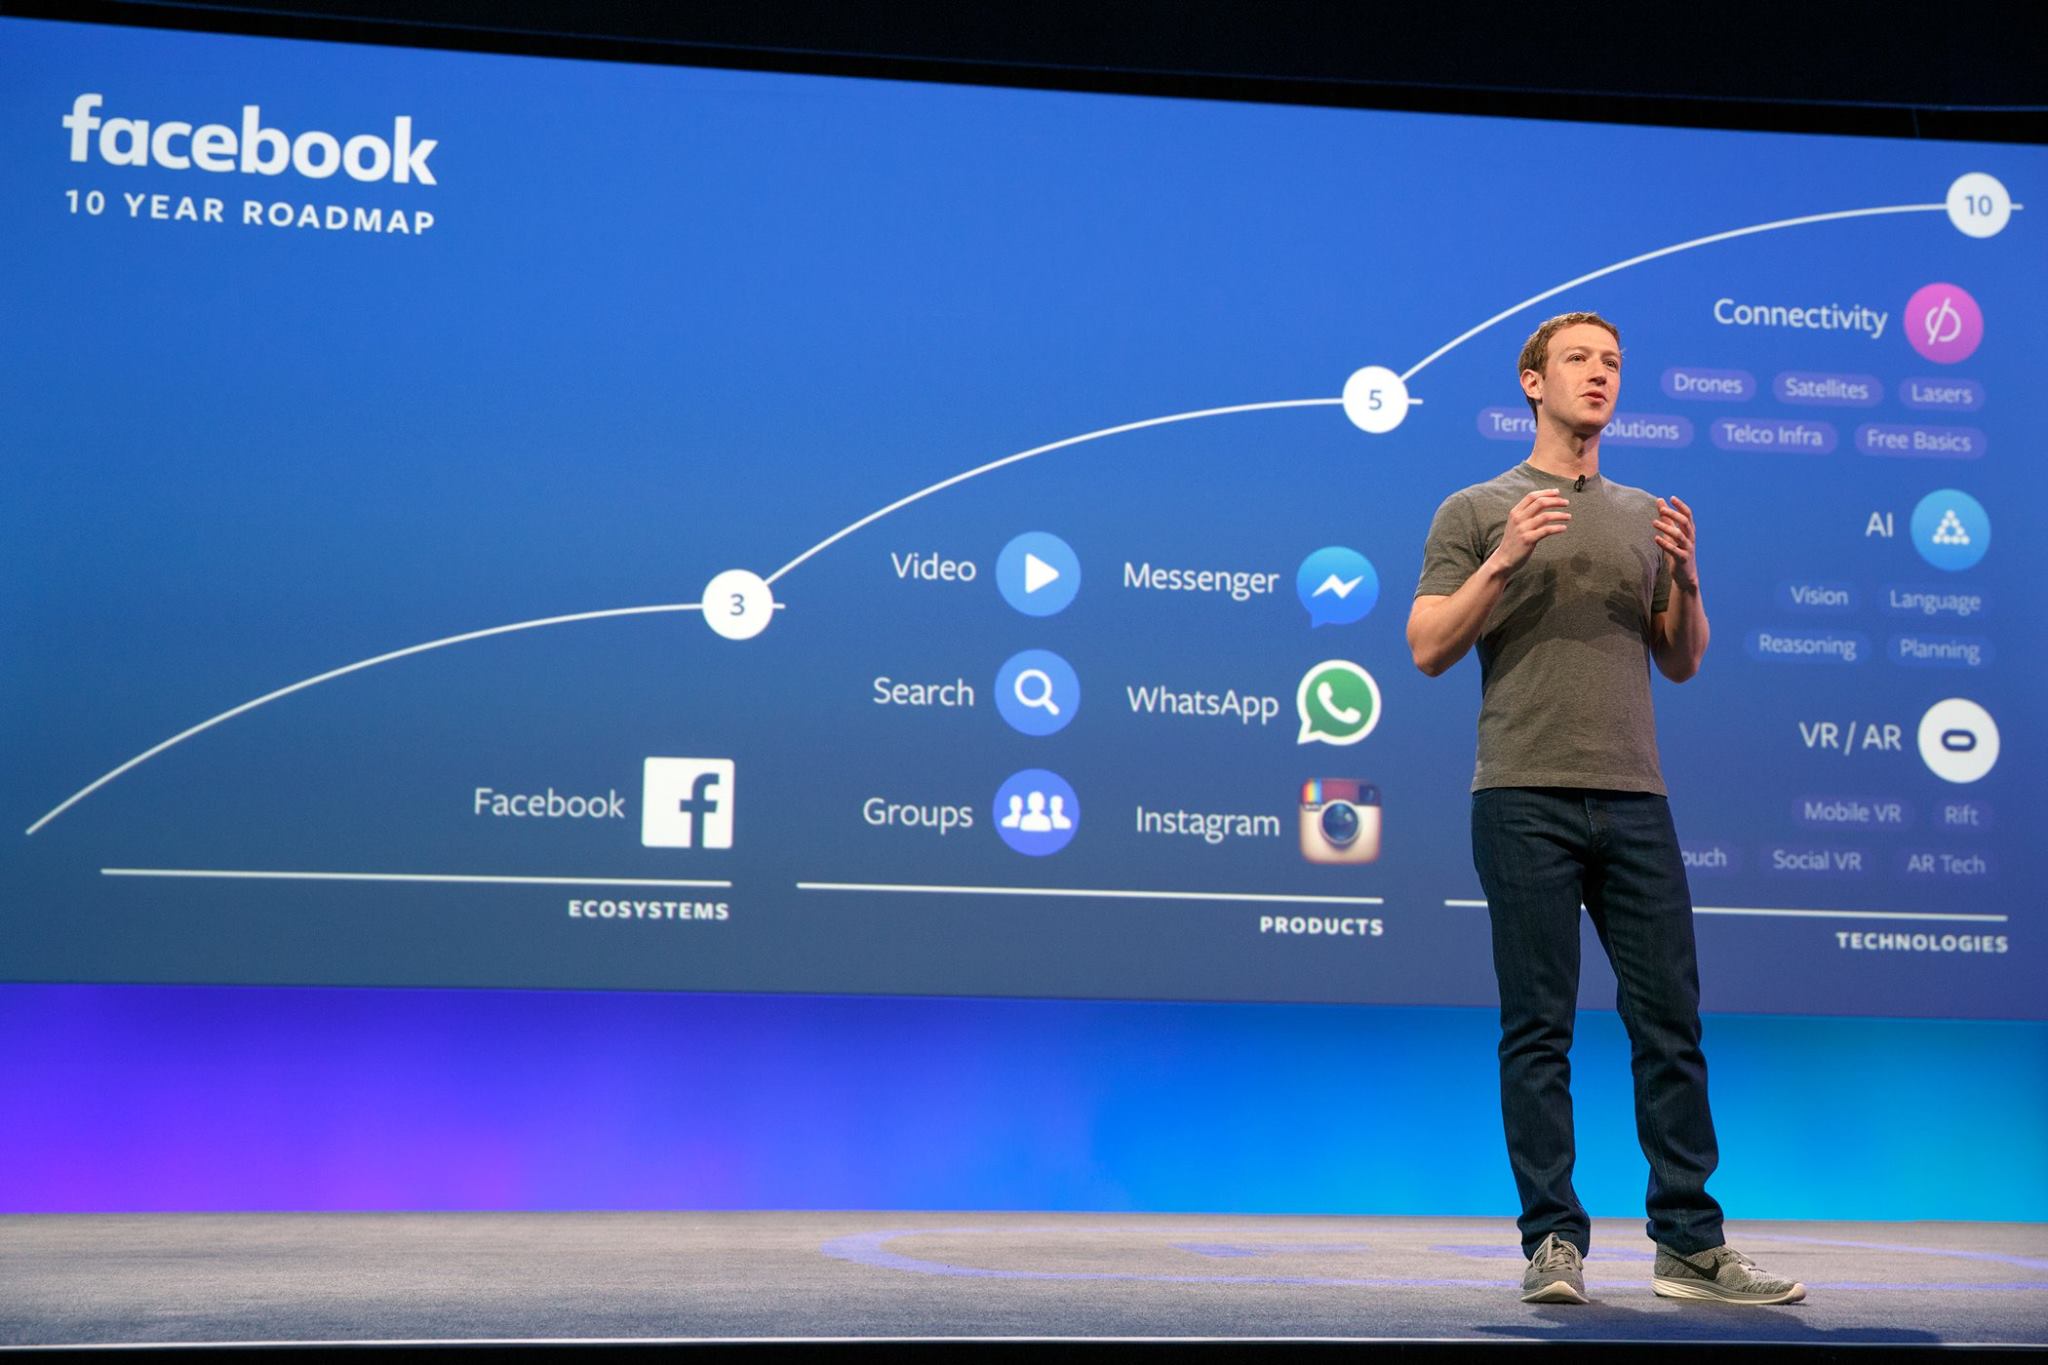 La revolución de Facebook (prepárate, marketero)